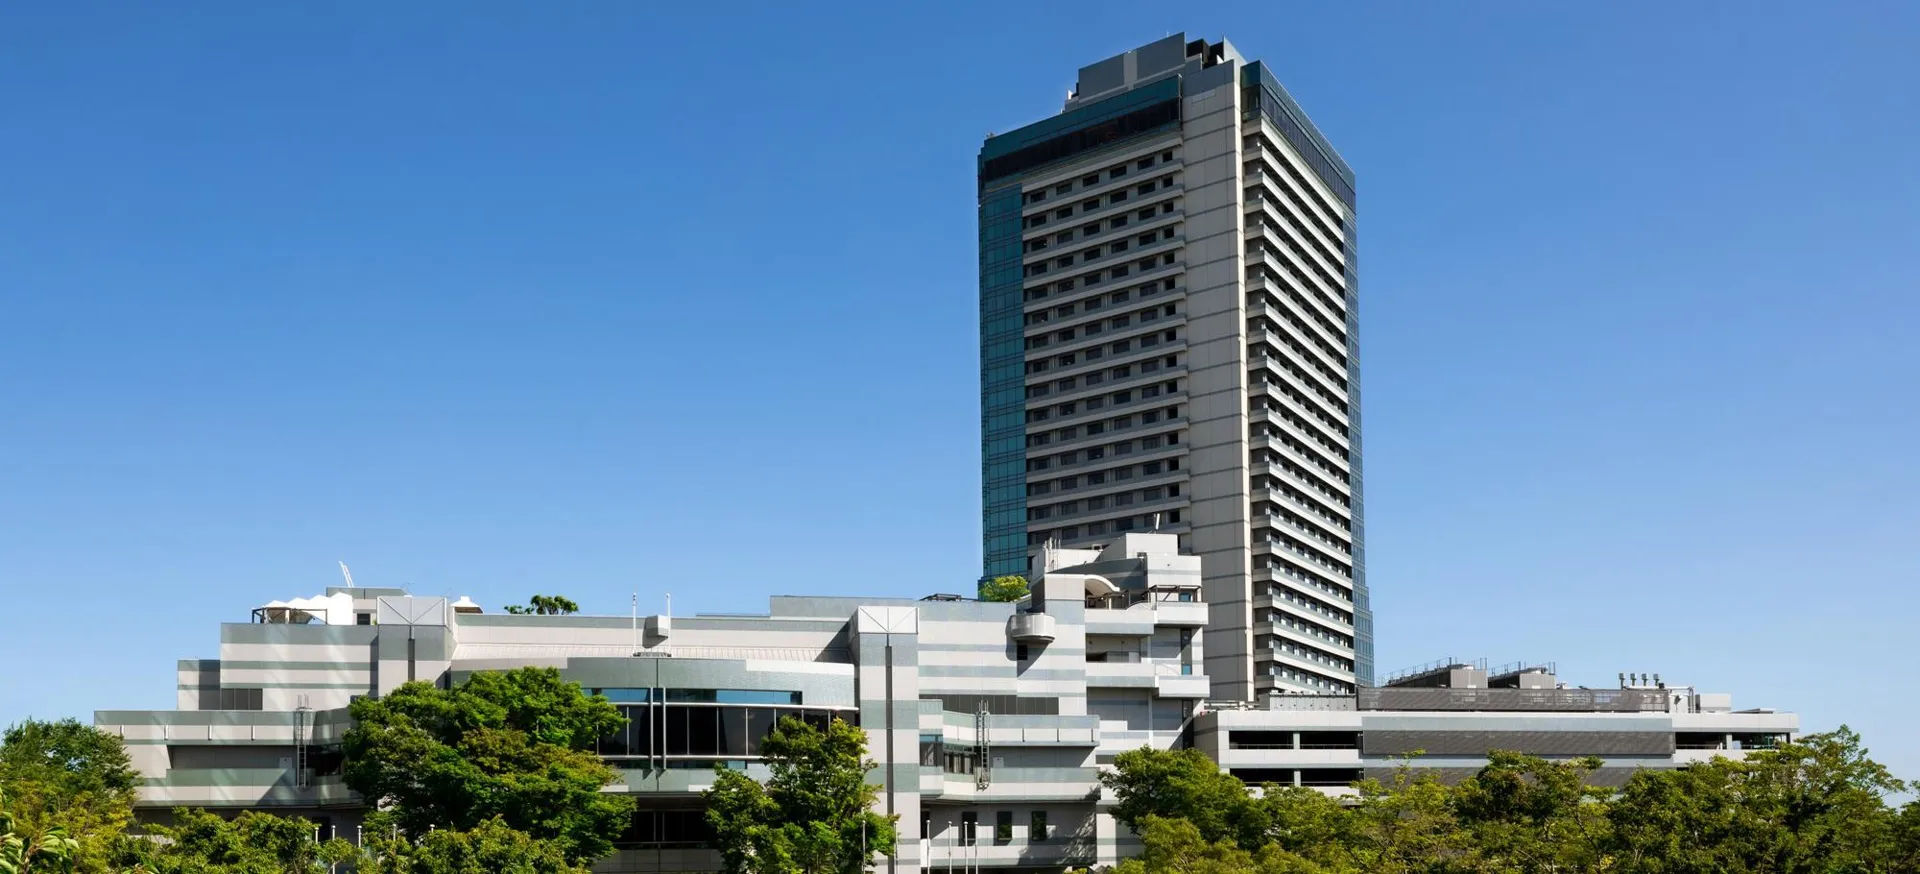 大阪灣格蘭王子大飯店,GRAND PRINCE HOTEL OSAKA BAY